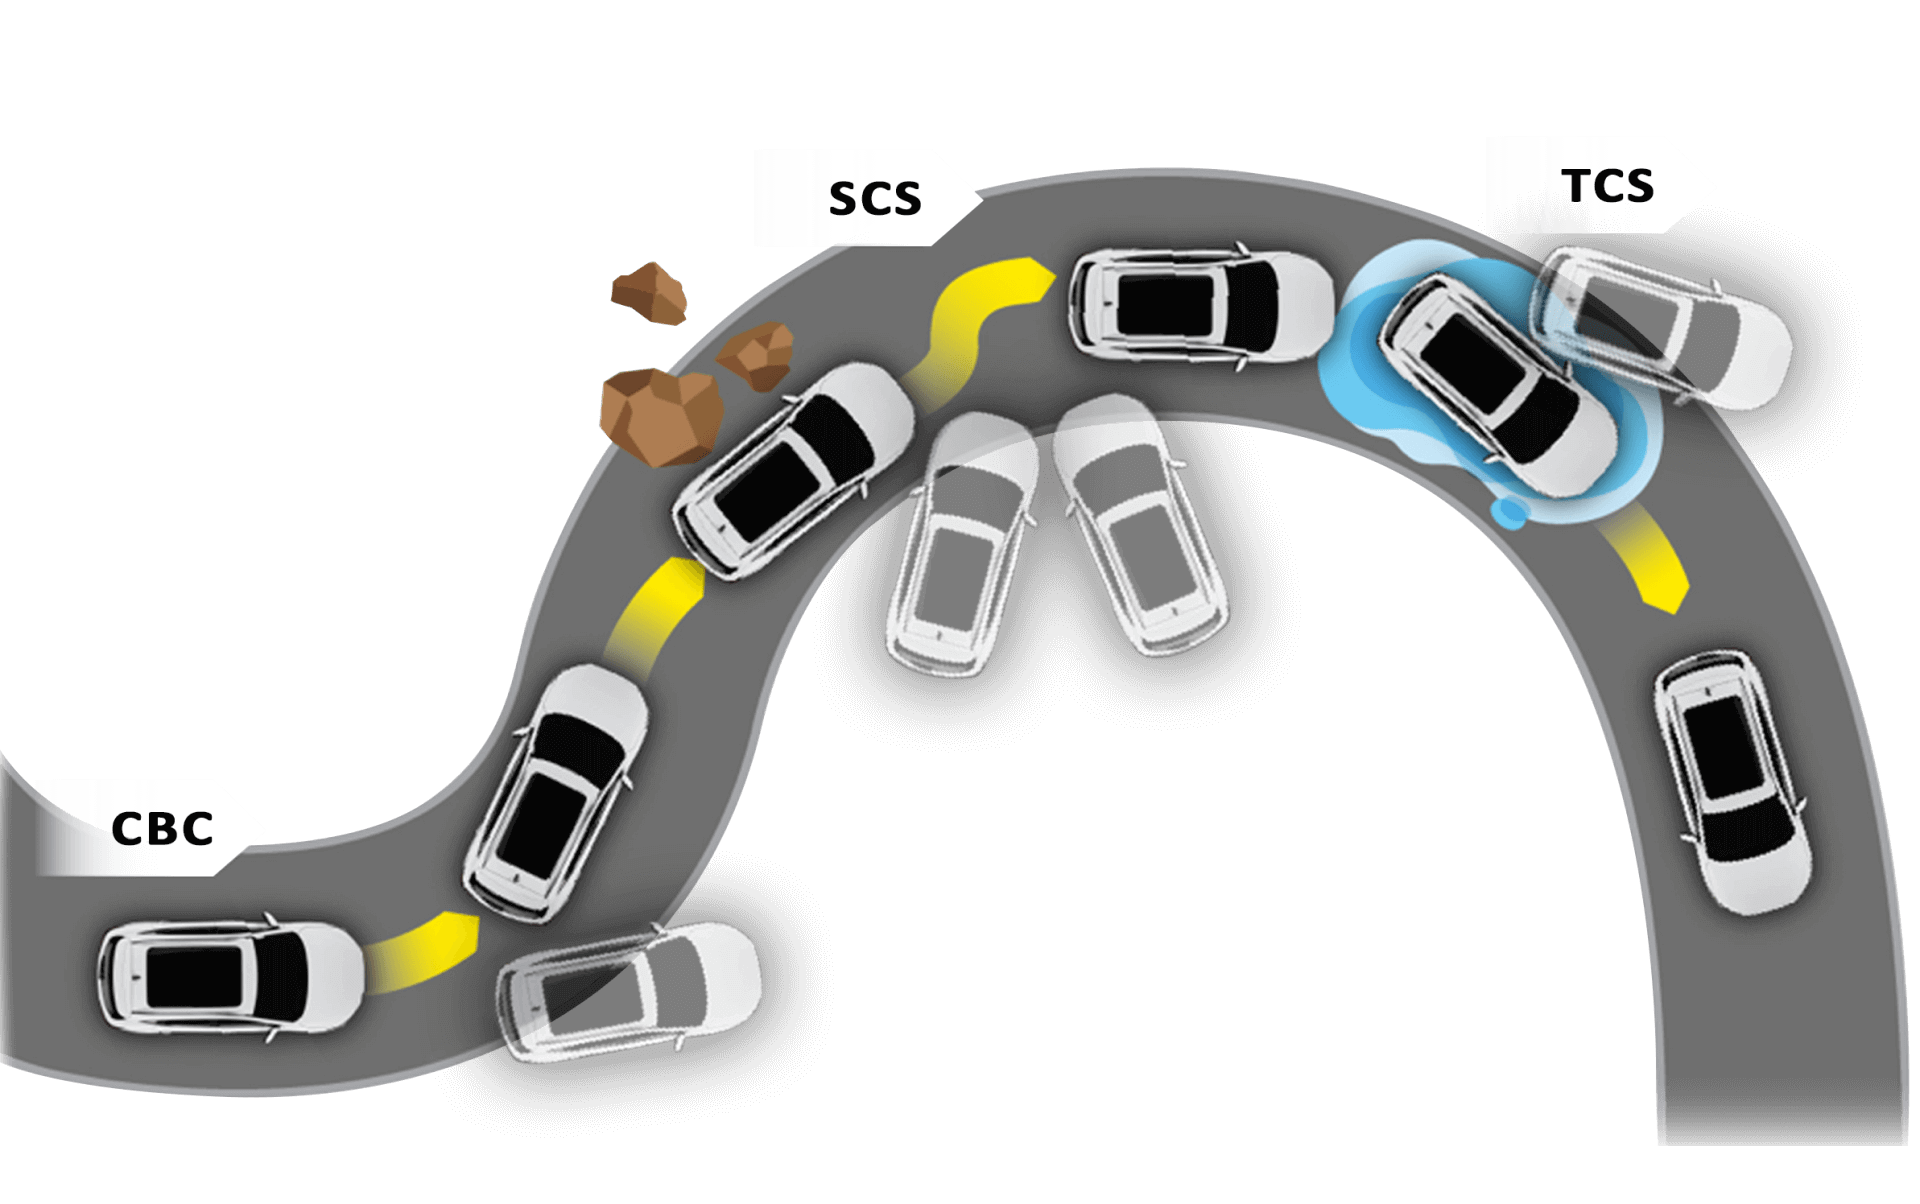 Kiểm soát độ bám đường (TCS) + Kiểm soát phanh góc cua (CBC) + Ổn định thân xe (SCS)